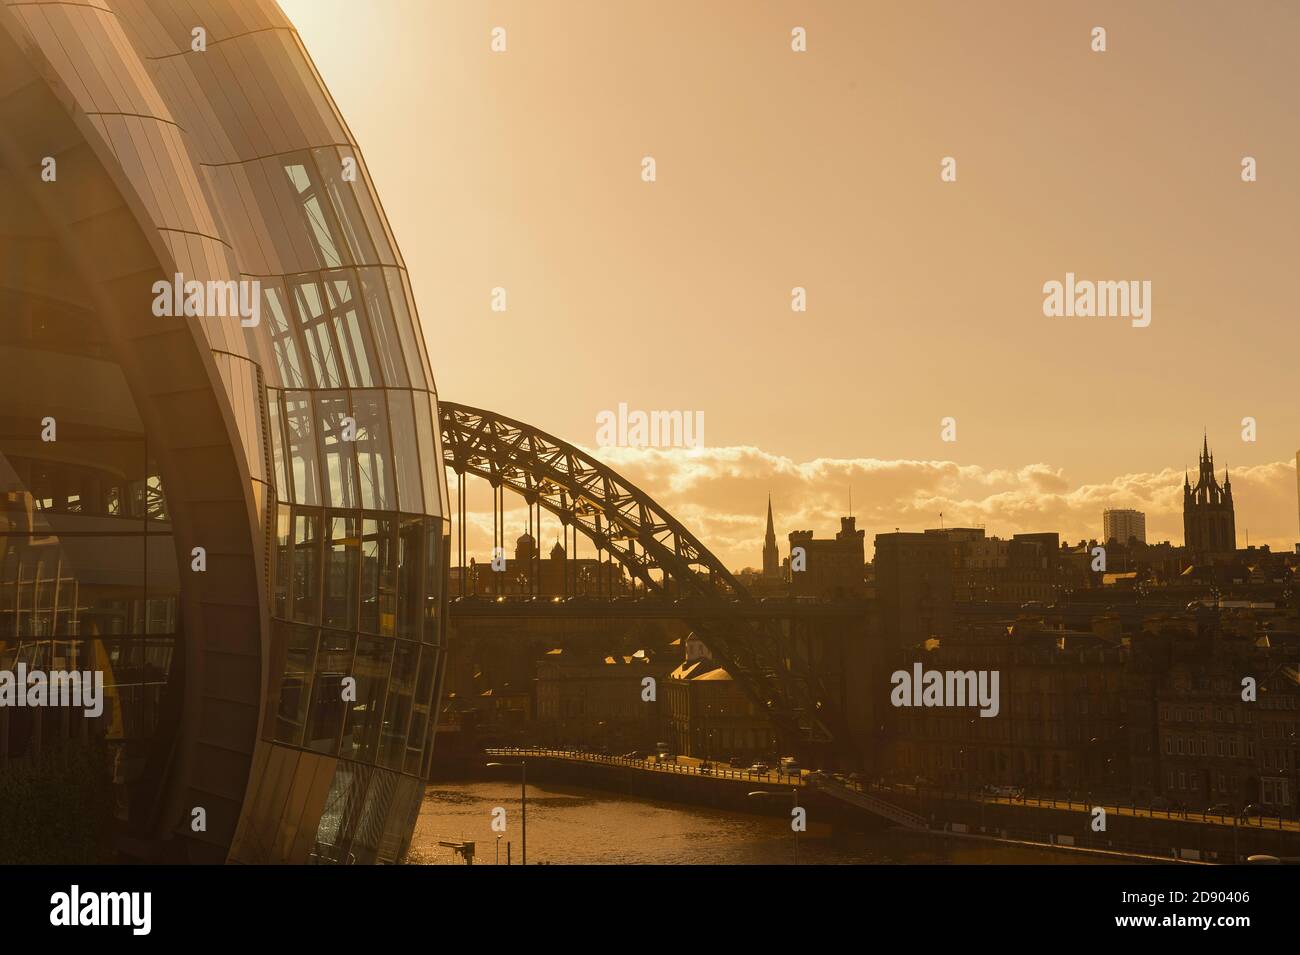 Vue sur le Sage Gateshead, la salle de concert et le pont Tyne traversant Gateshead à Newcastle upon Tyne, dans le nord-est de l'Angleterre. Banque D'Images